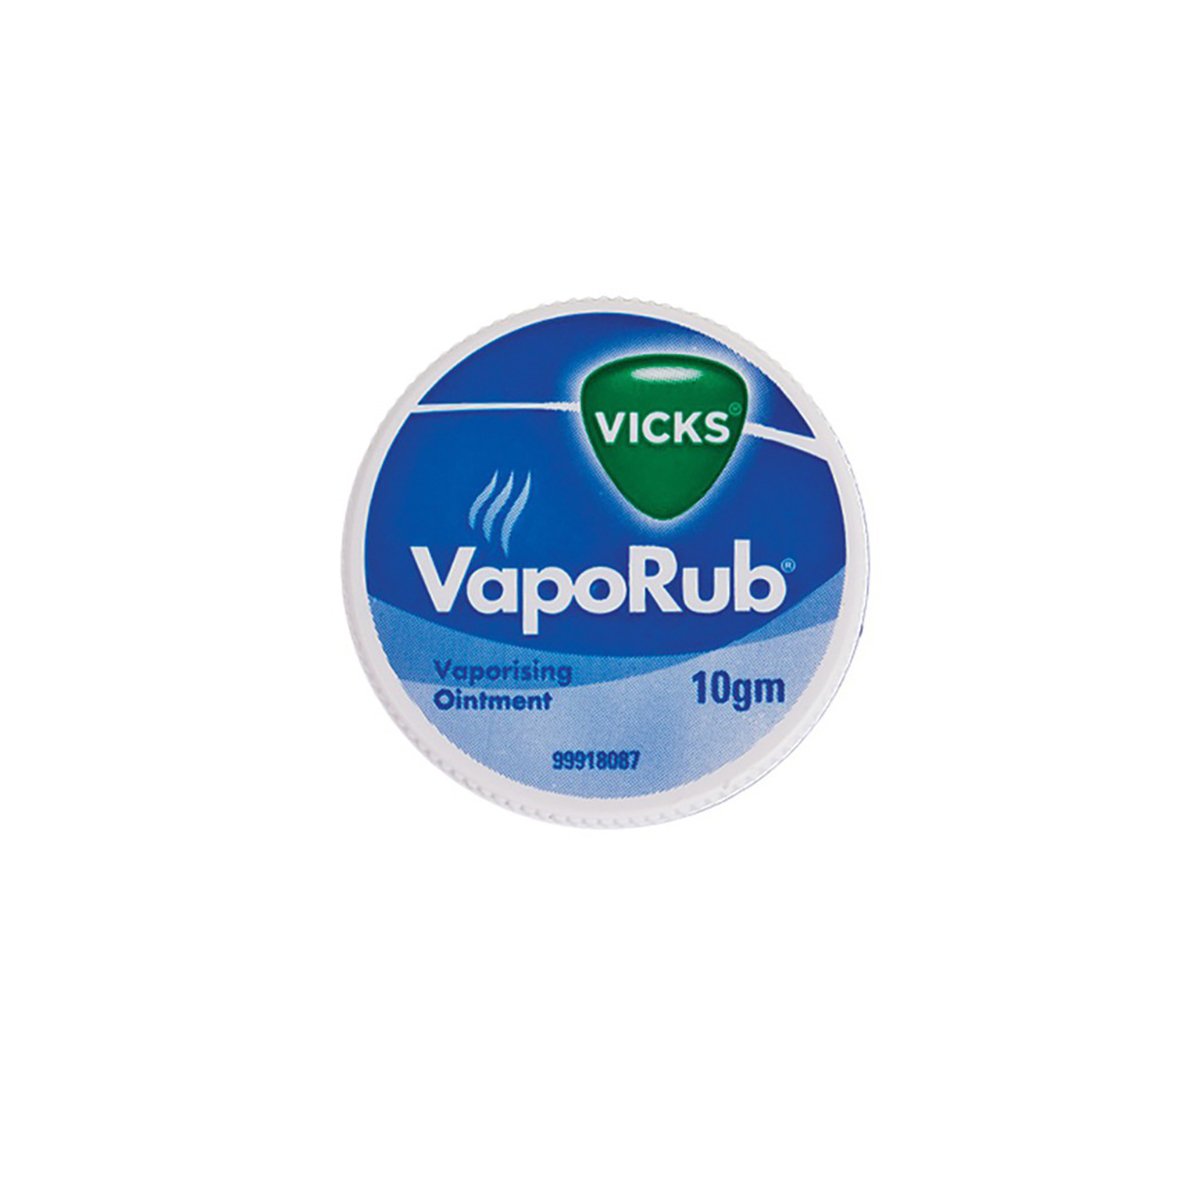 Vicks VapoRub Vaporising Ointment 10gm